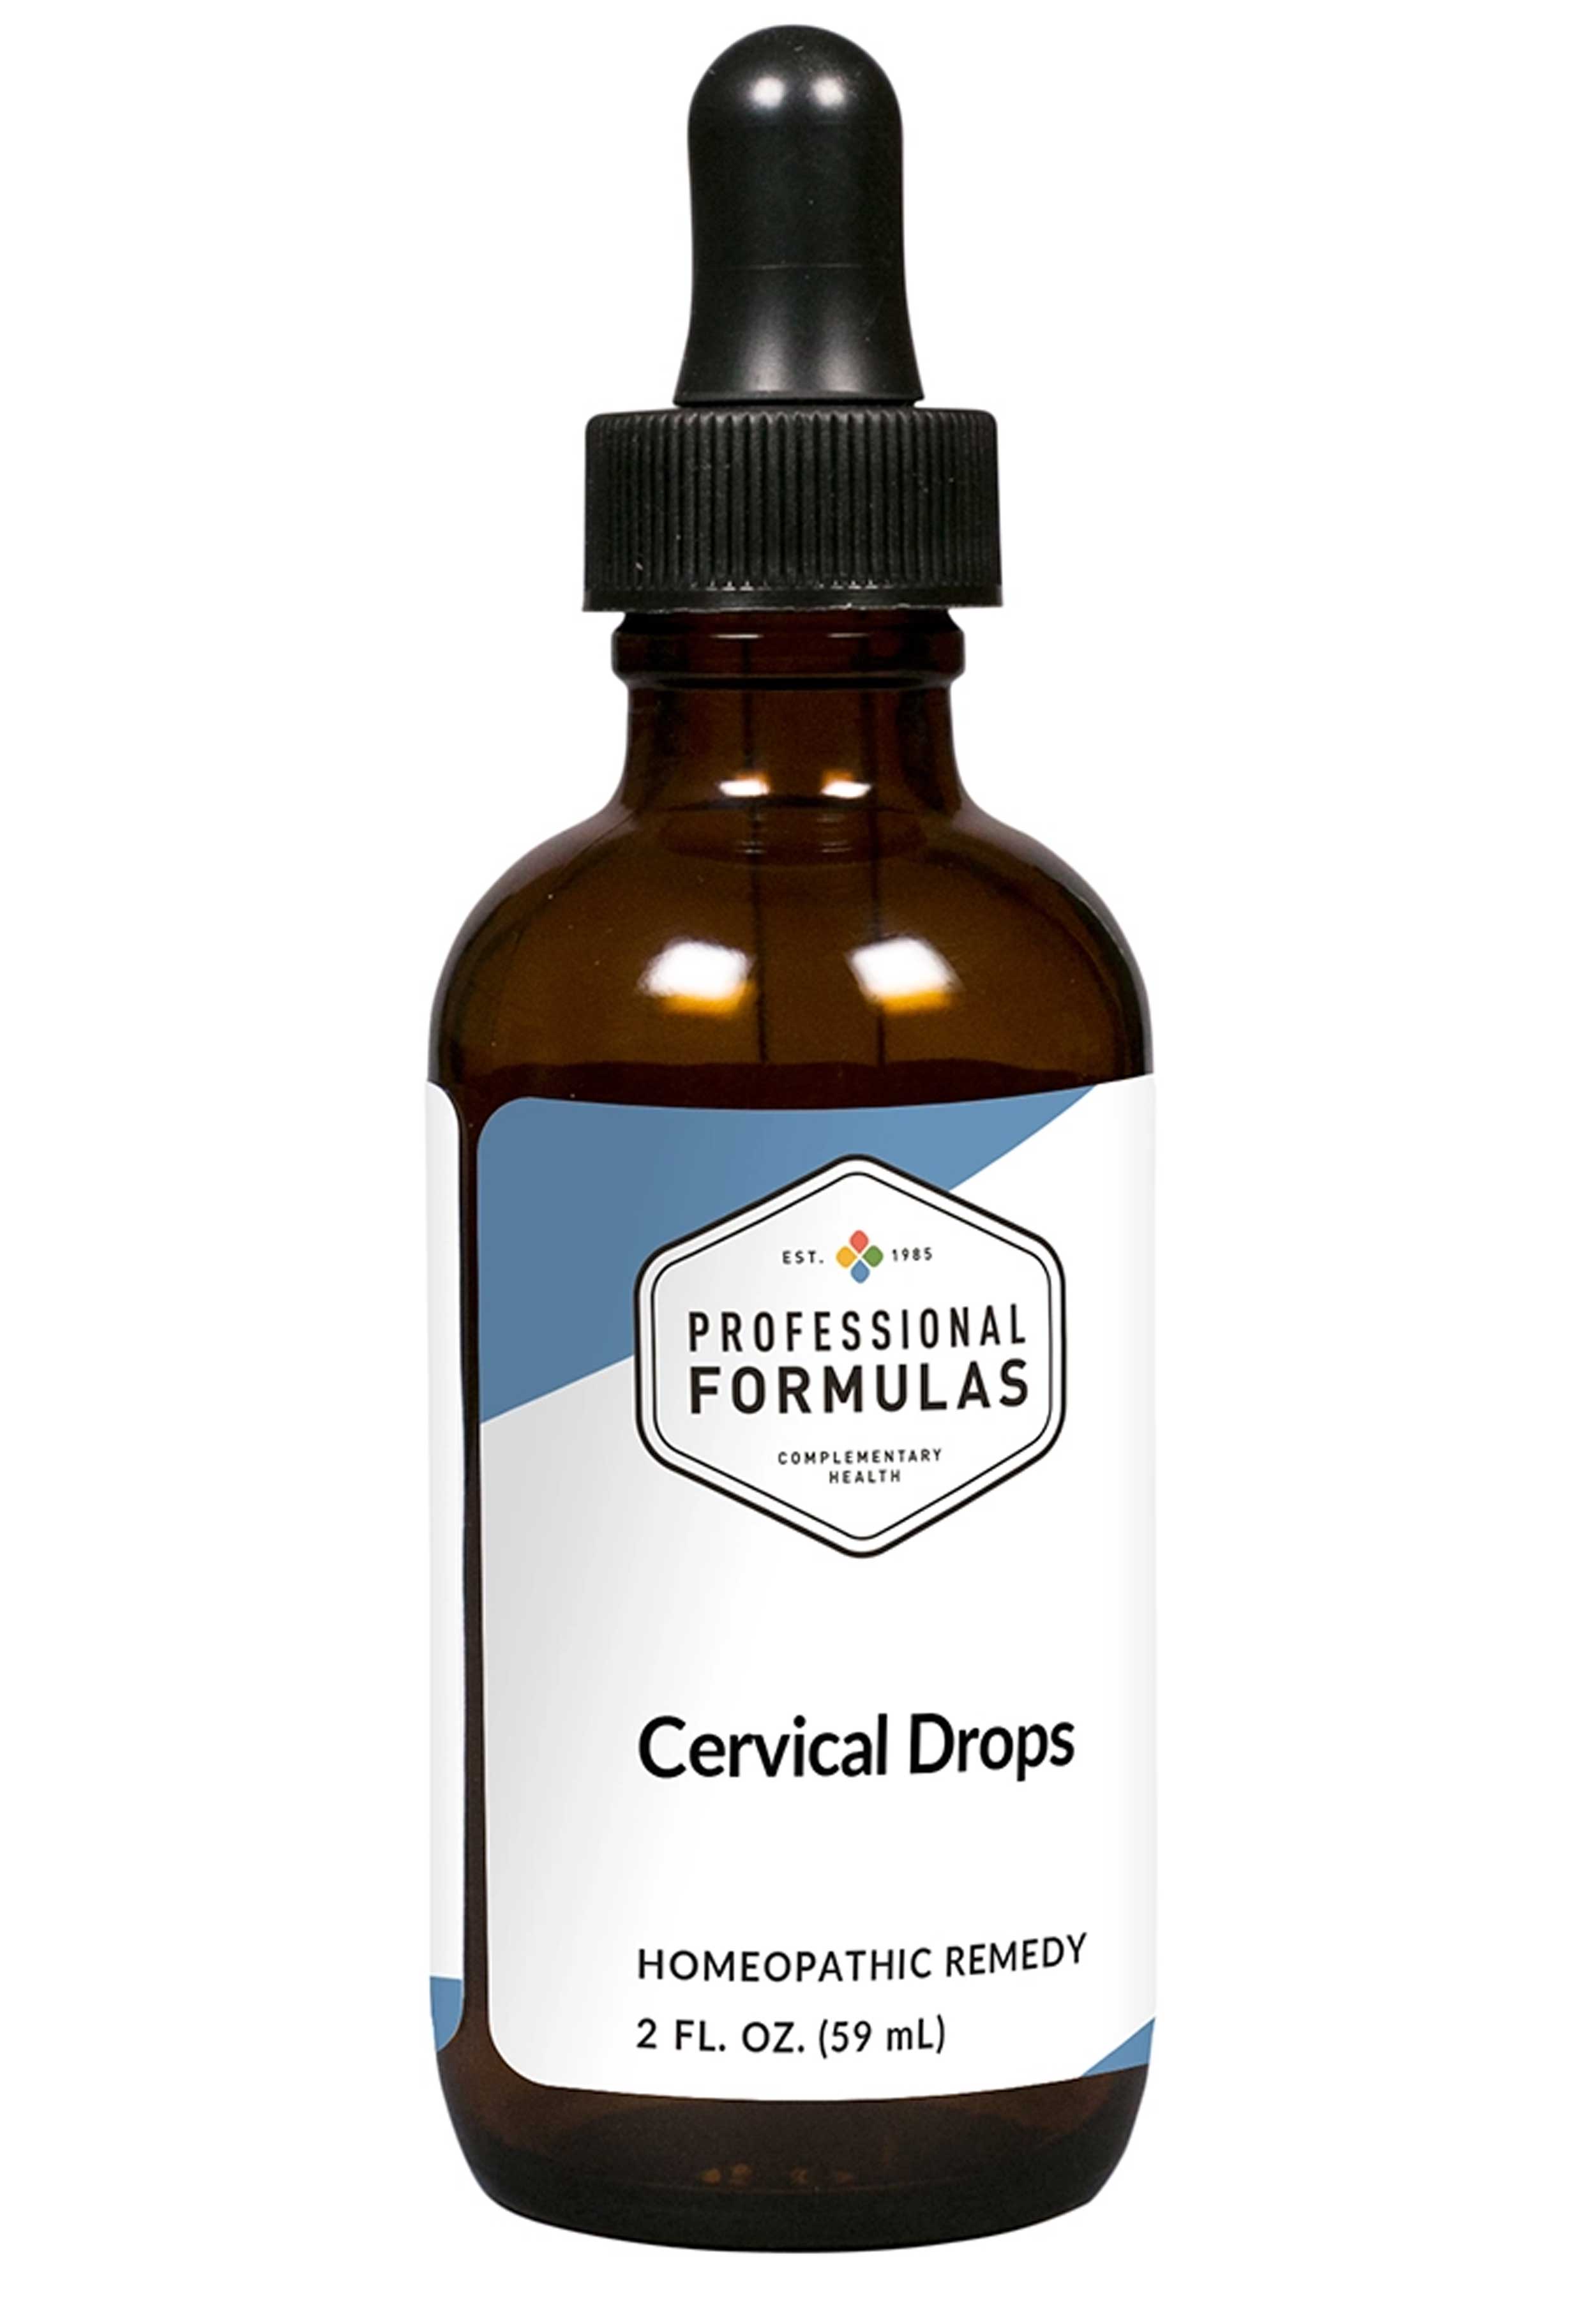 Professional Formulas Cervical Drops